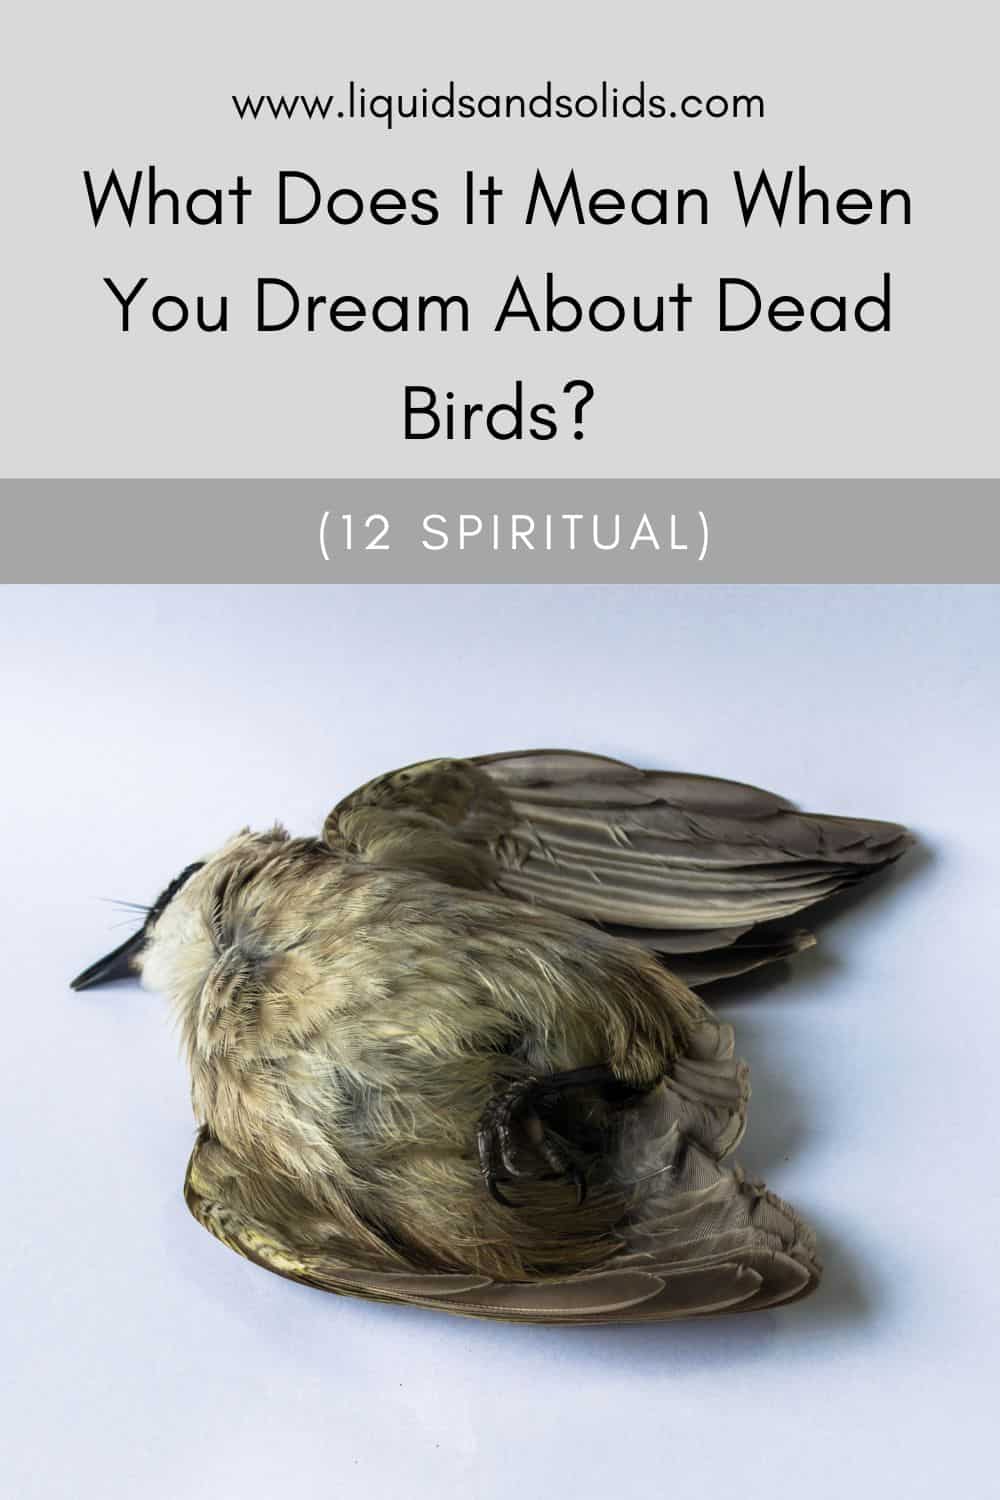  Soñar con paxaros mortos (12 significados espirituais)